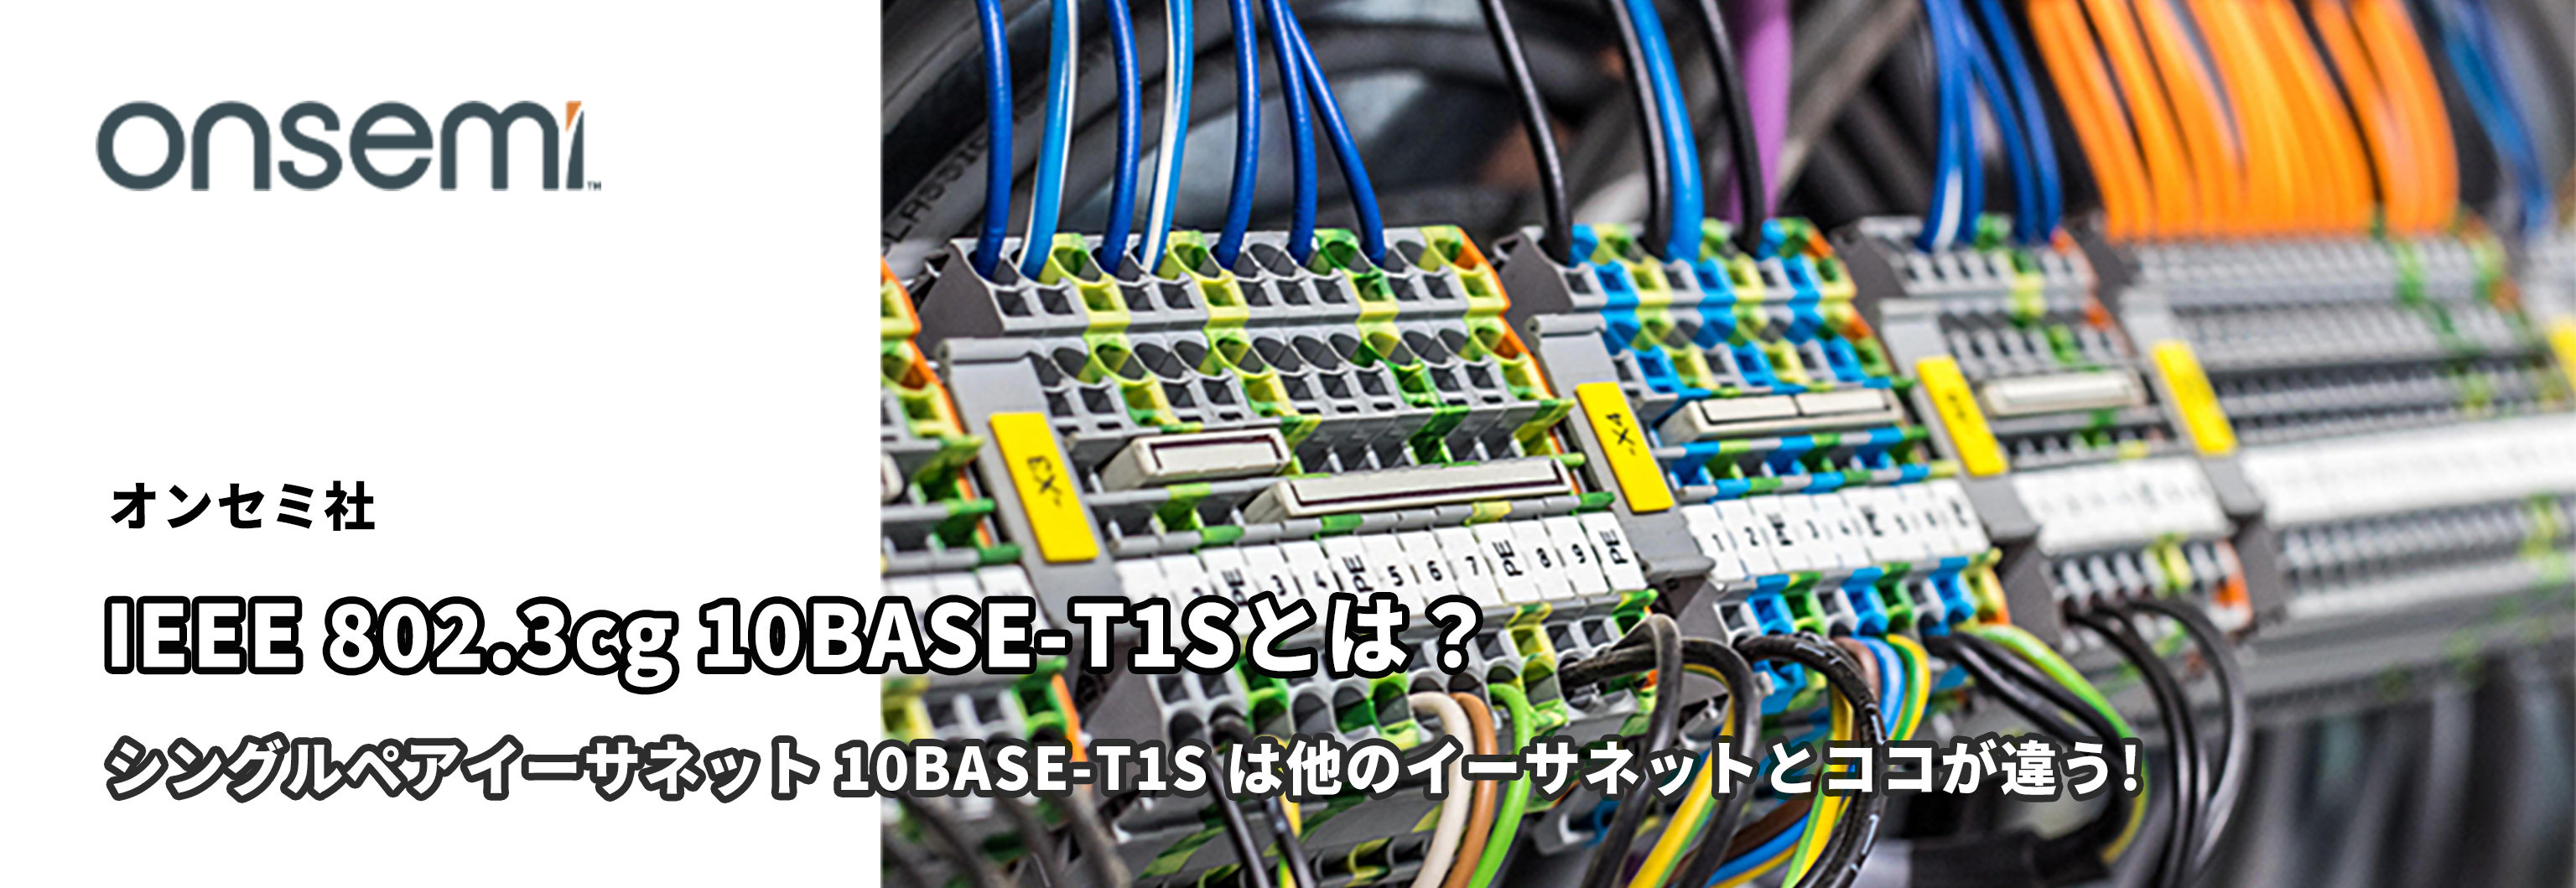 シングルペアイーサネット 10BASE-T1S は他のイーサネットとココが違う! IEEE 802.3cg 10BASE-T1Sとは？